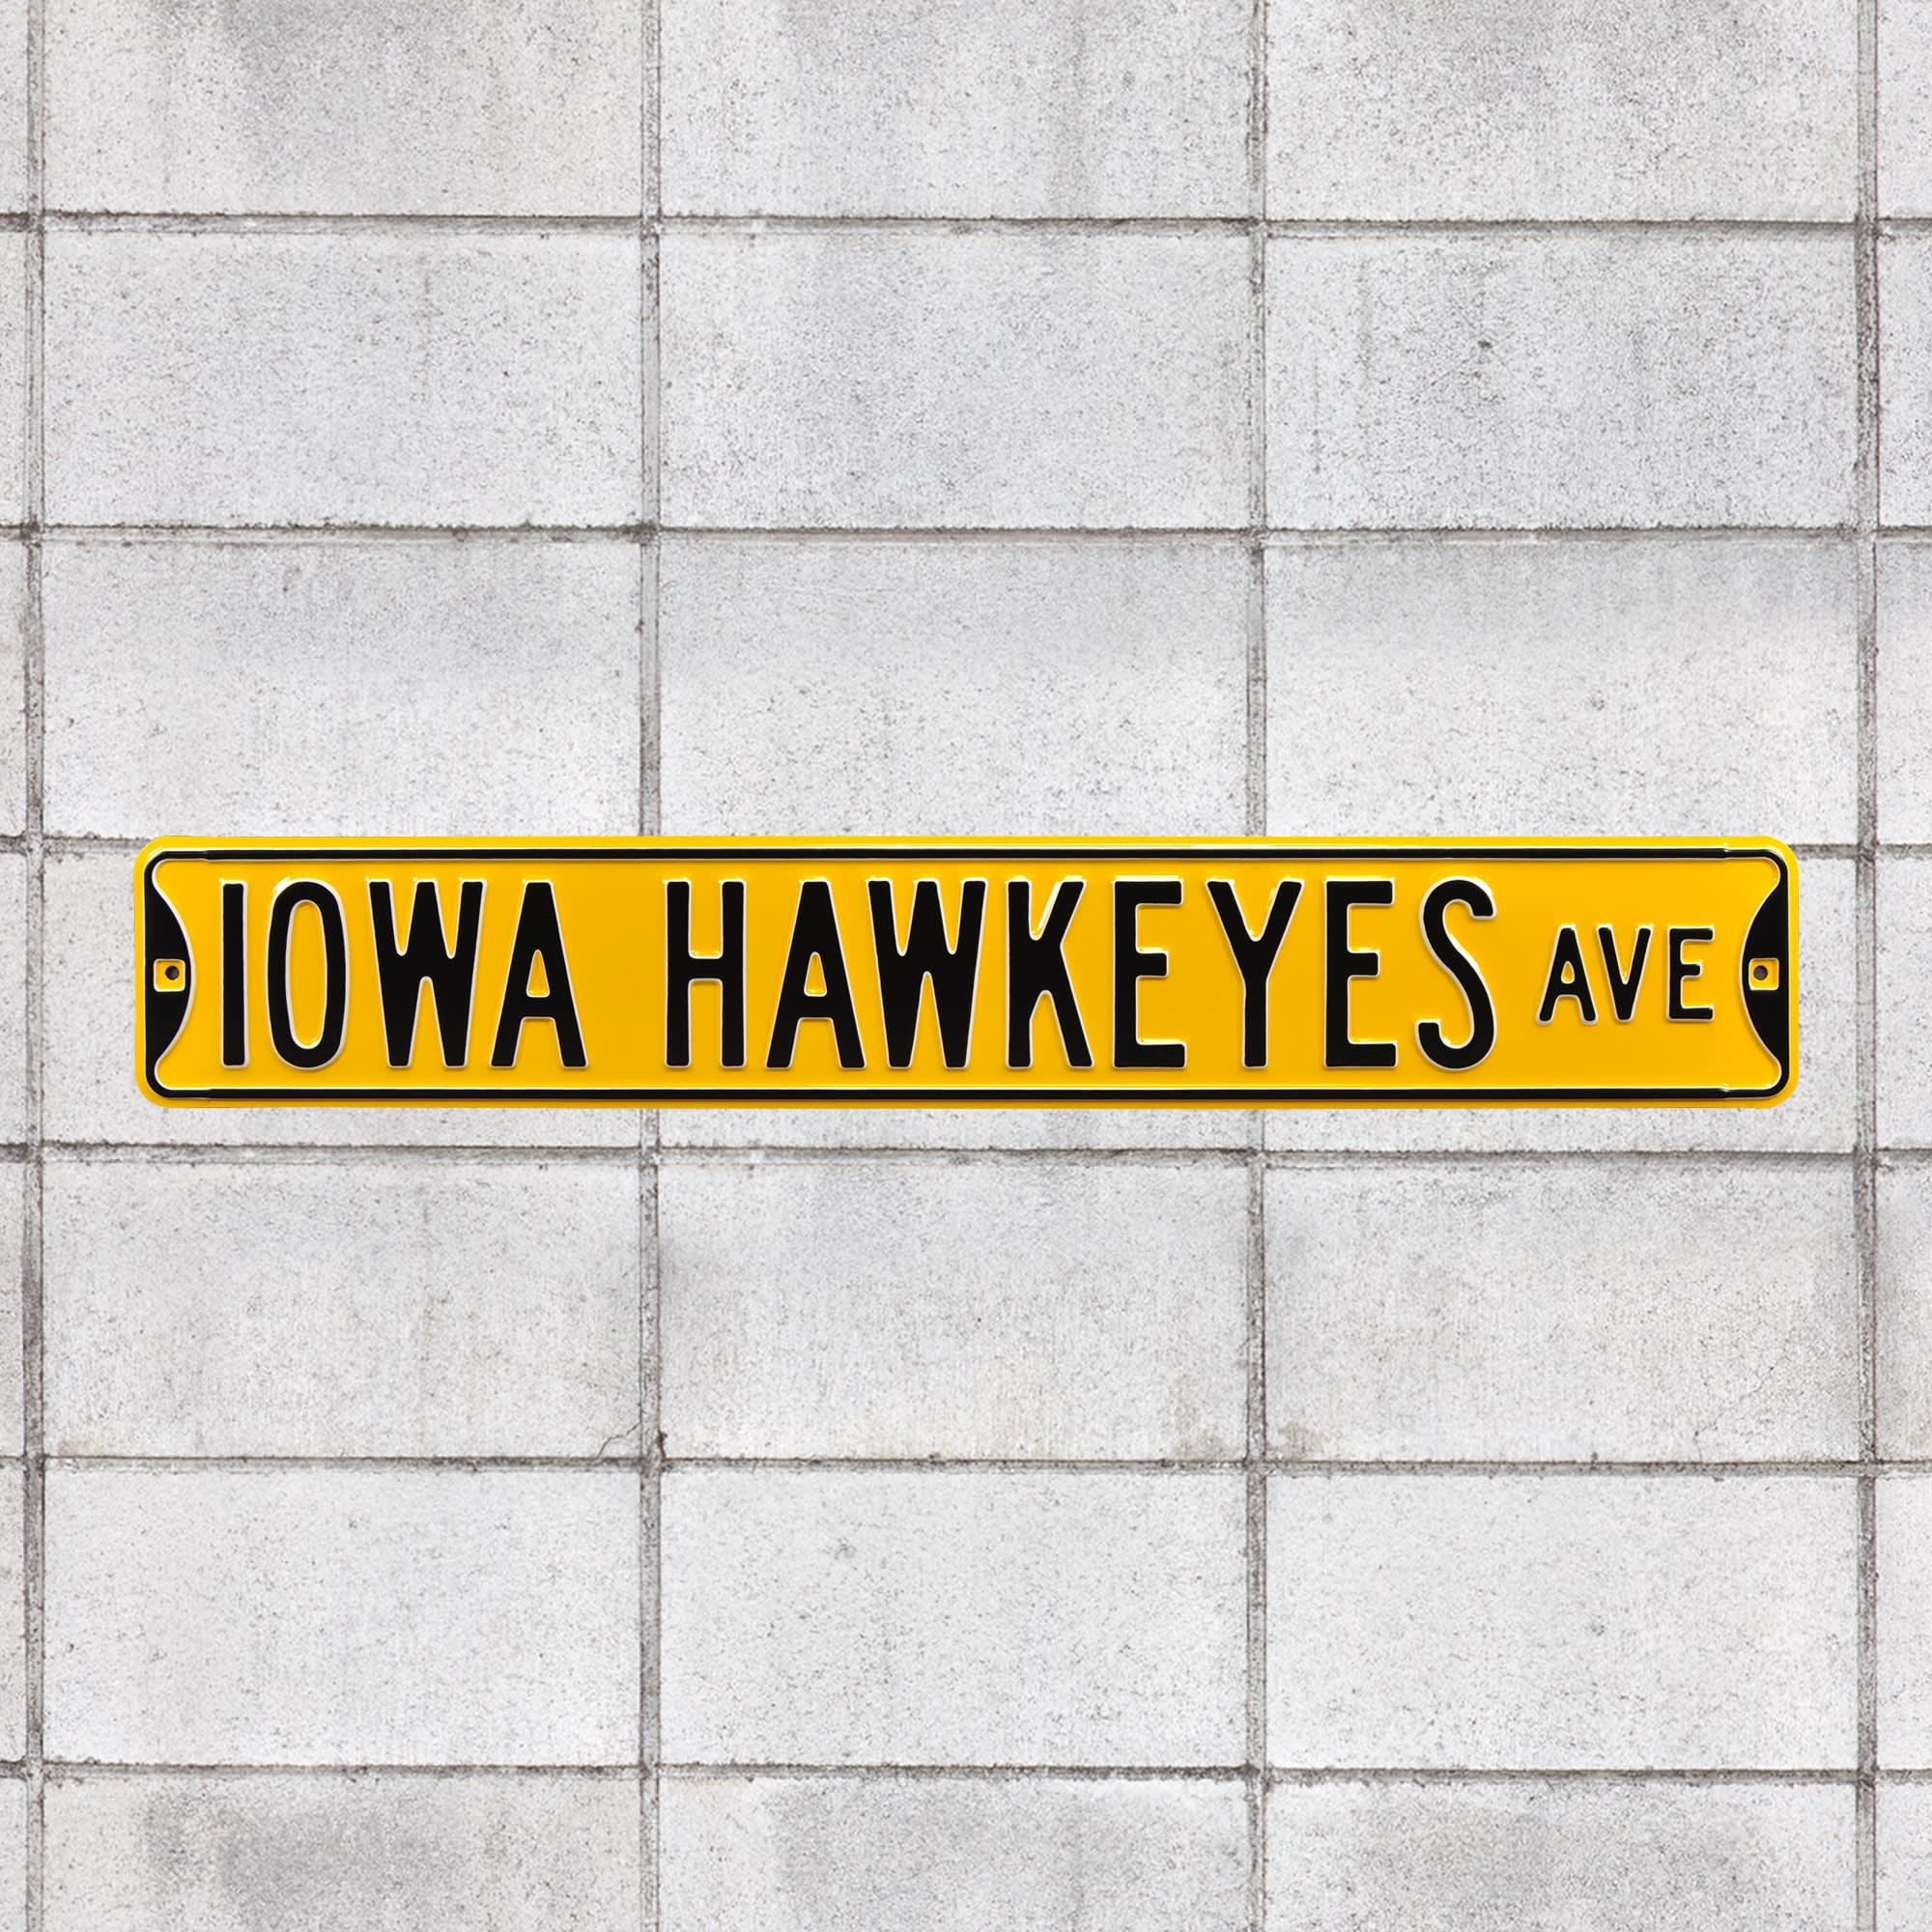 Iowa Hawkeyes: Iowa Hawkeyes Avenue - Officially Licensed Metal Street Sign 36.0"W x 6.0"H by Fathead | 100% Steel